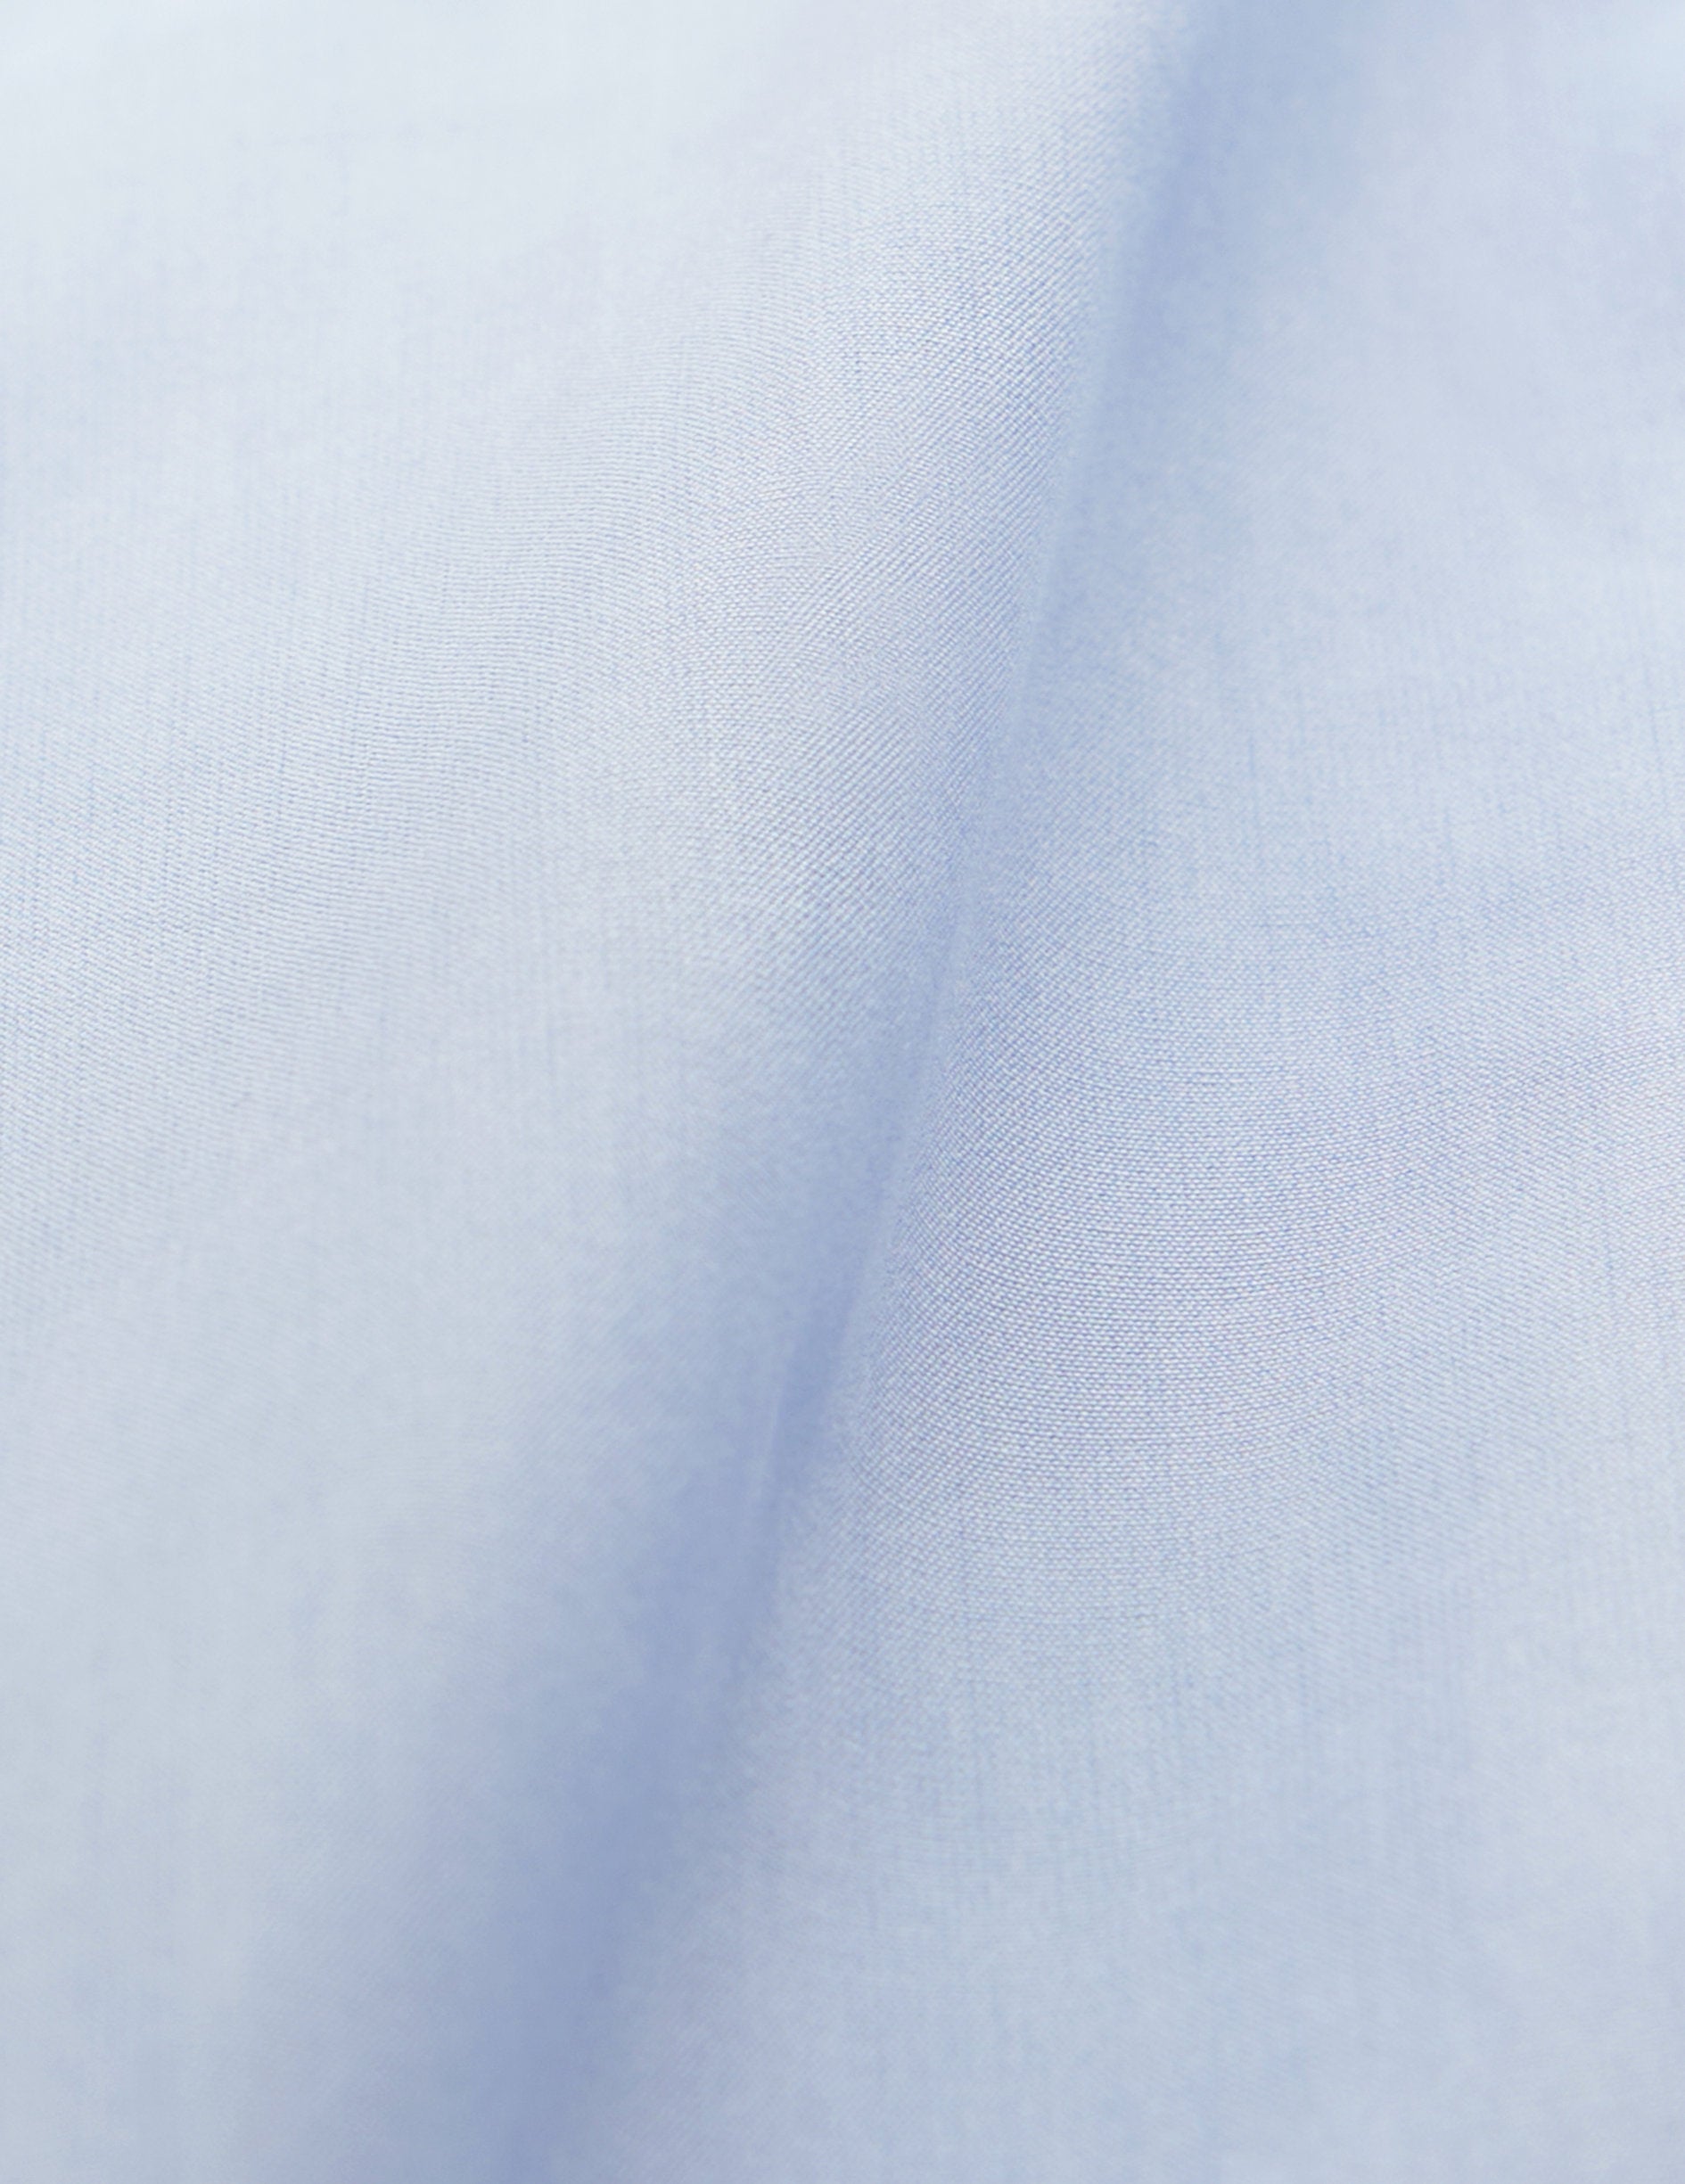 Blue semi-fitted shirt - Poplin - Italian Collar